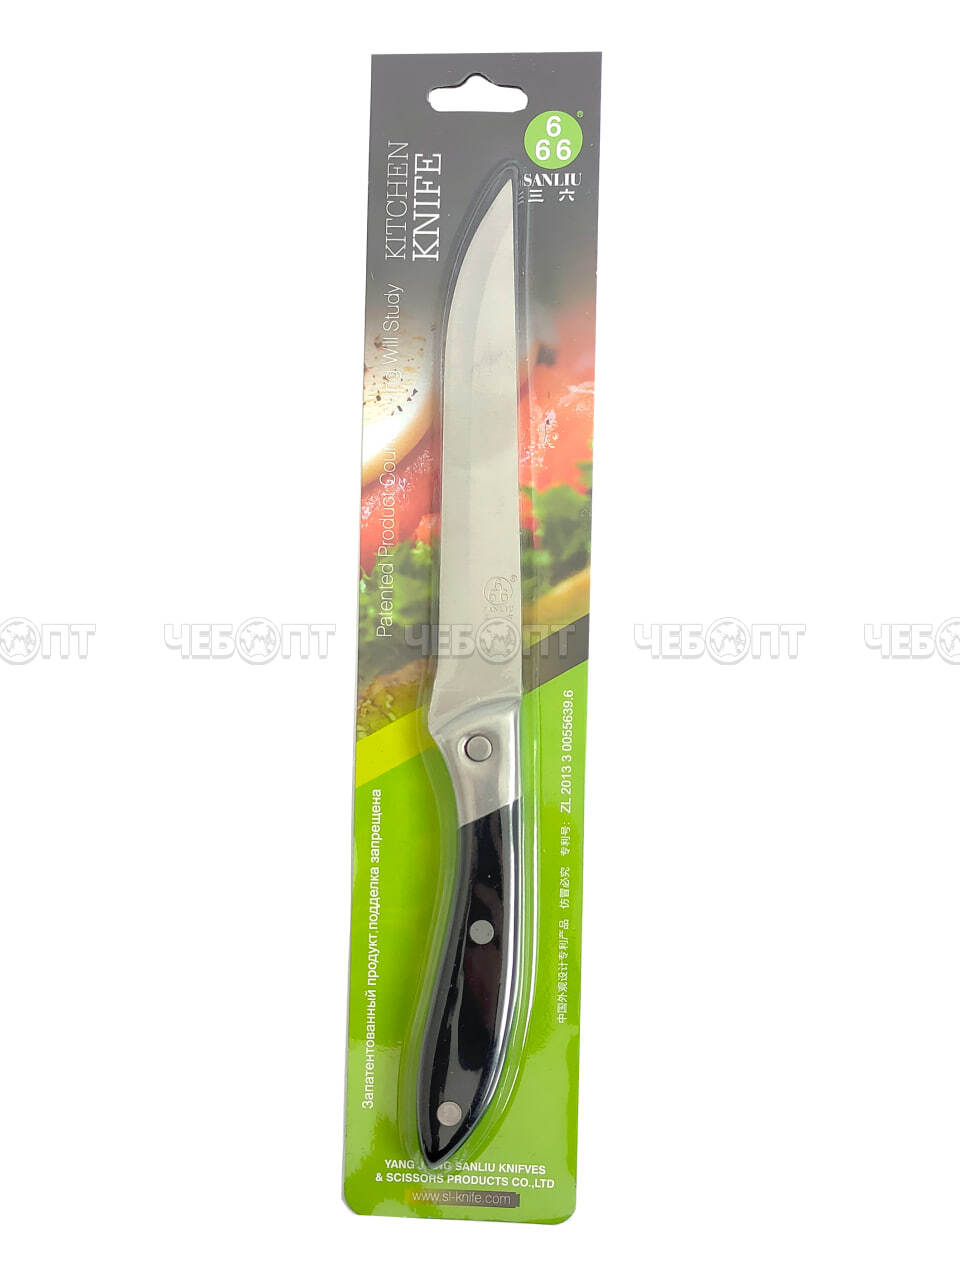 Нож кухонный универсальный 11 см Sanliu 666 из нержавеющей стали с пластиковой ручкой арт. 26001 $ [250] GOODSEE. ЧЕБОПТ.